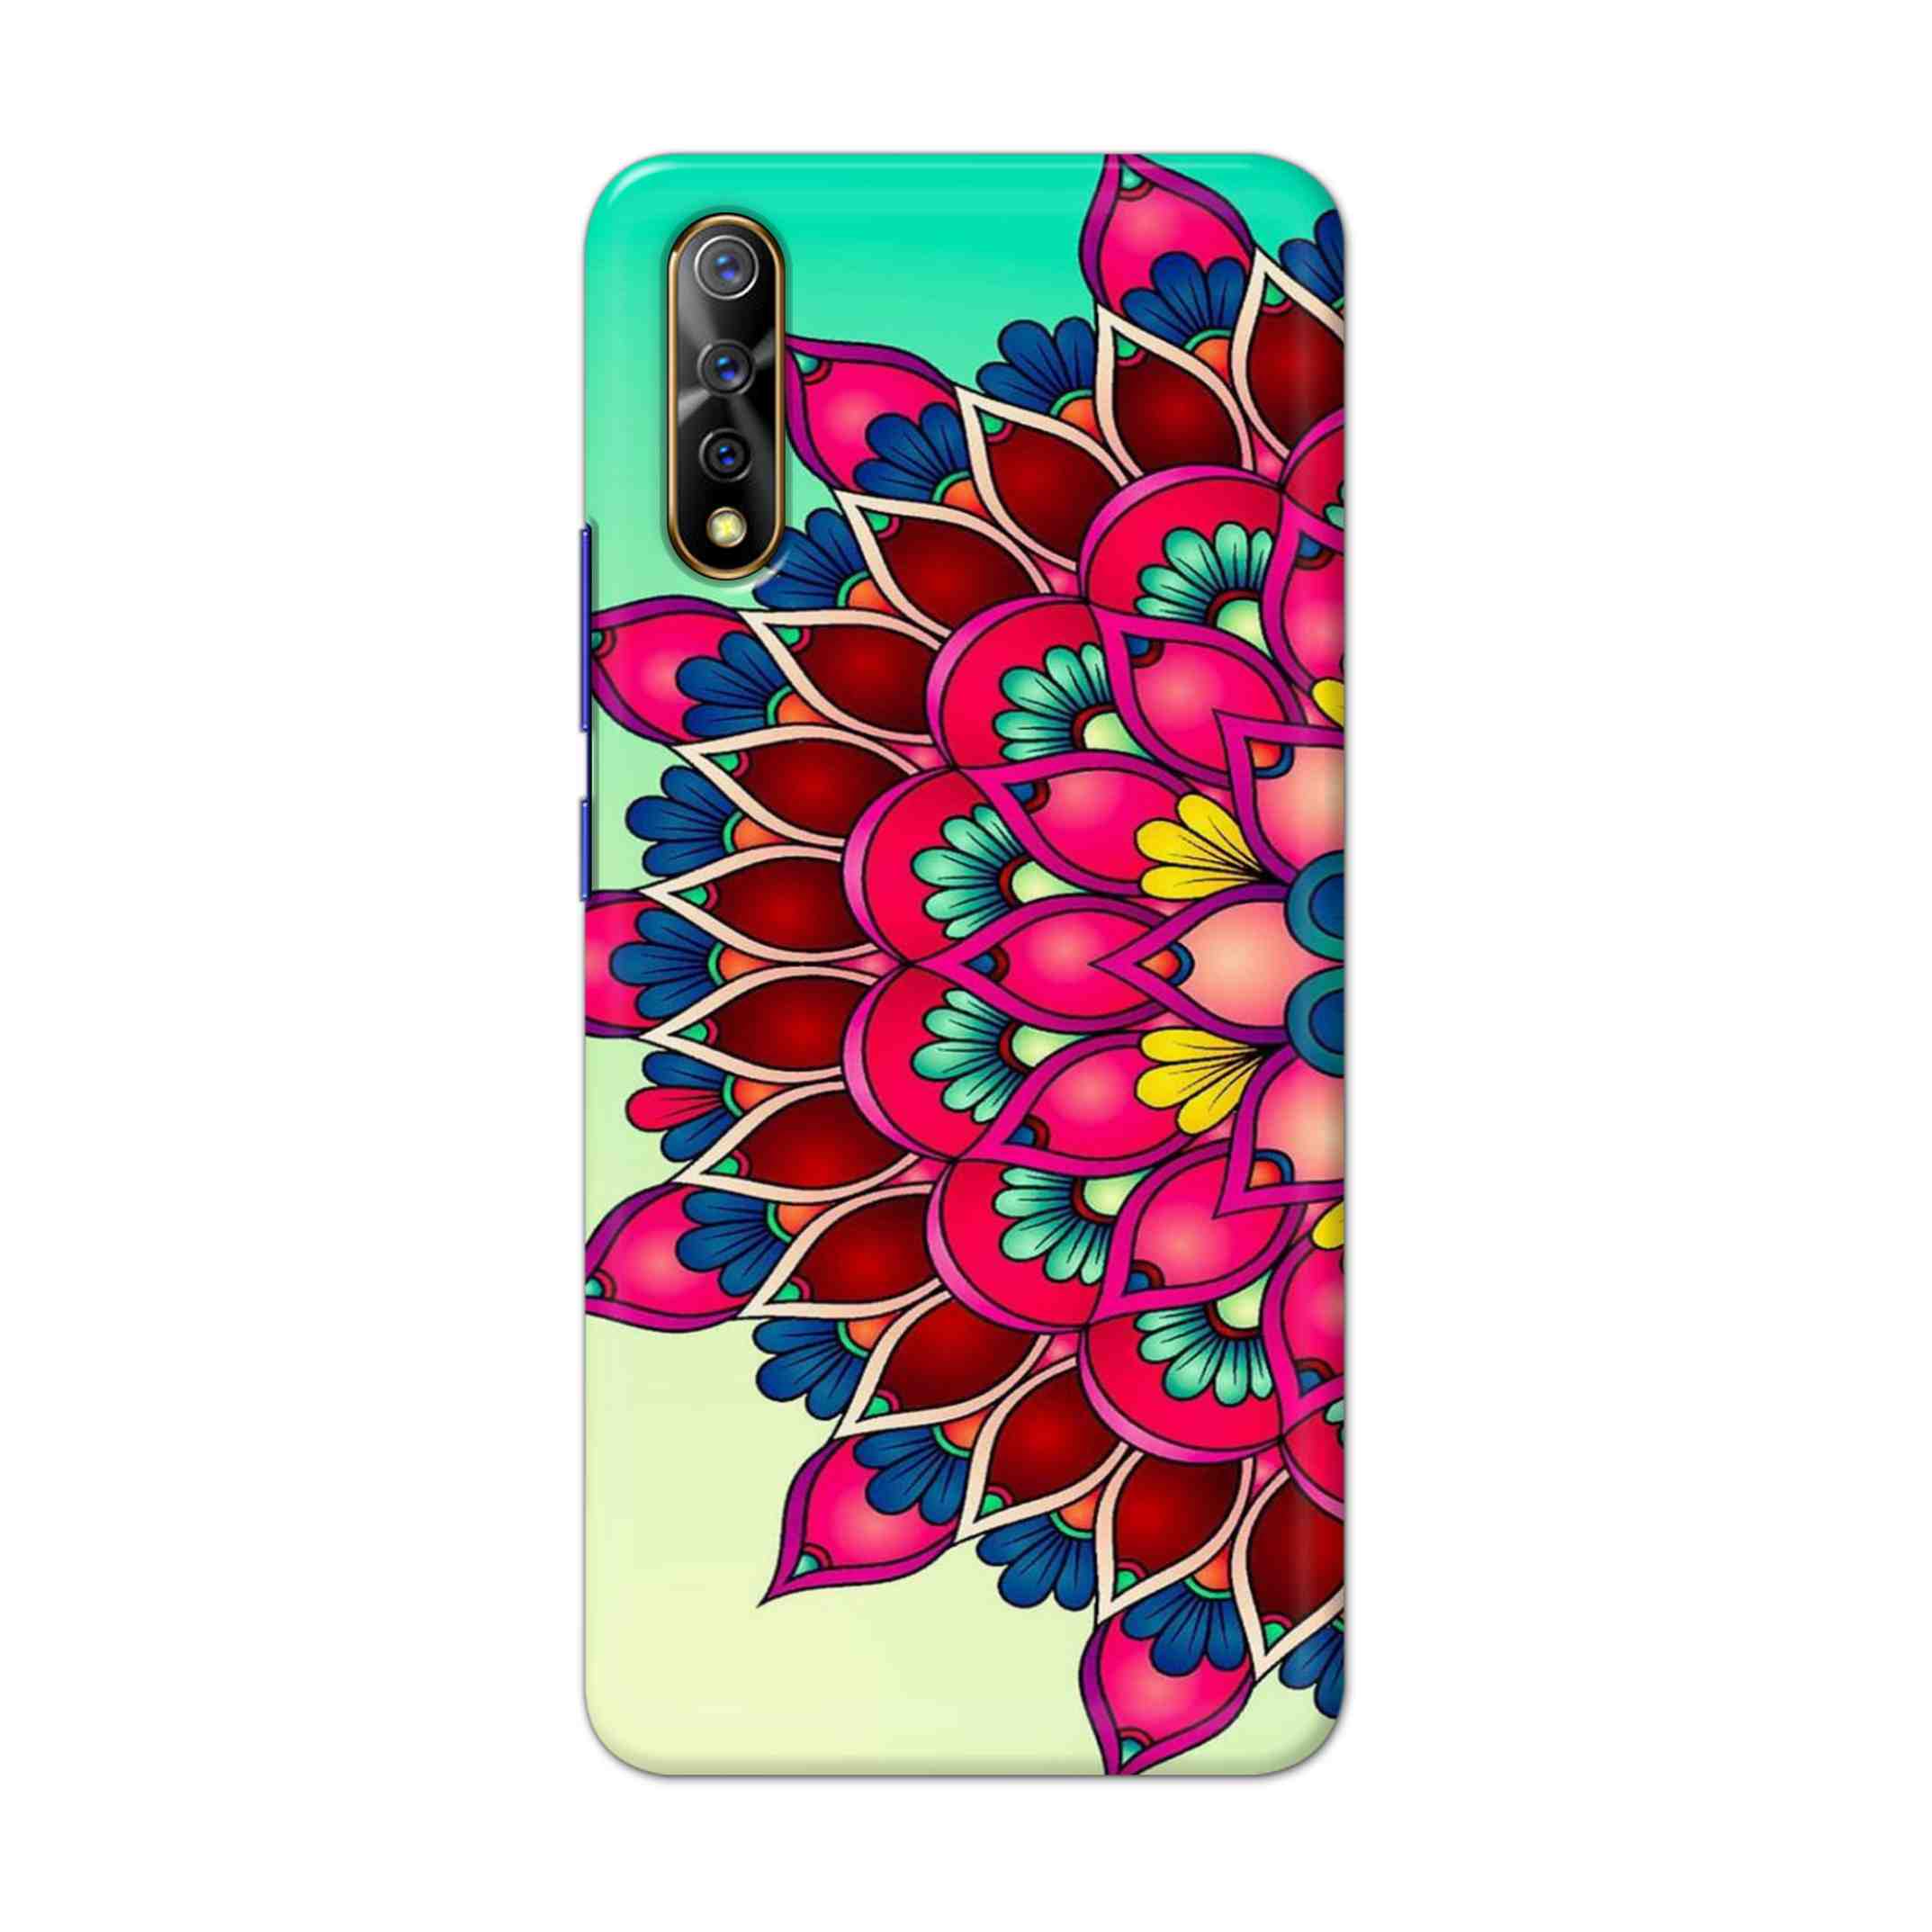 Buy Lotus Mandala Hard Back Mobile Phone Case Cover For Vivo S1 / Z1x Online